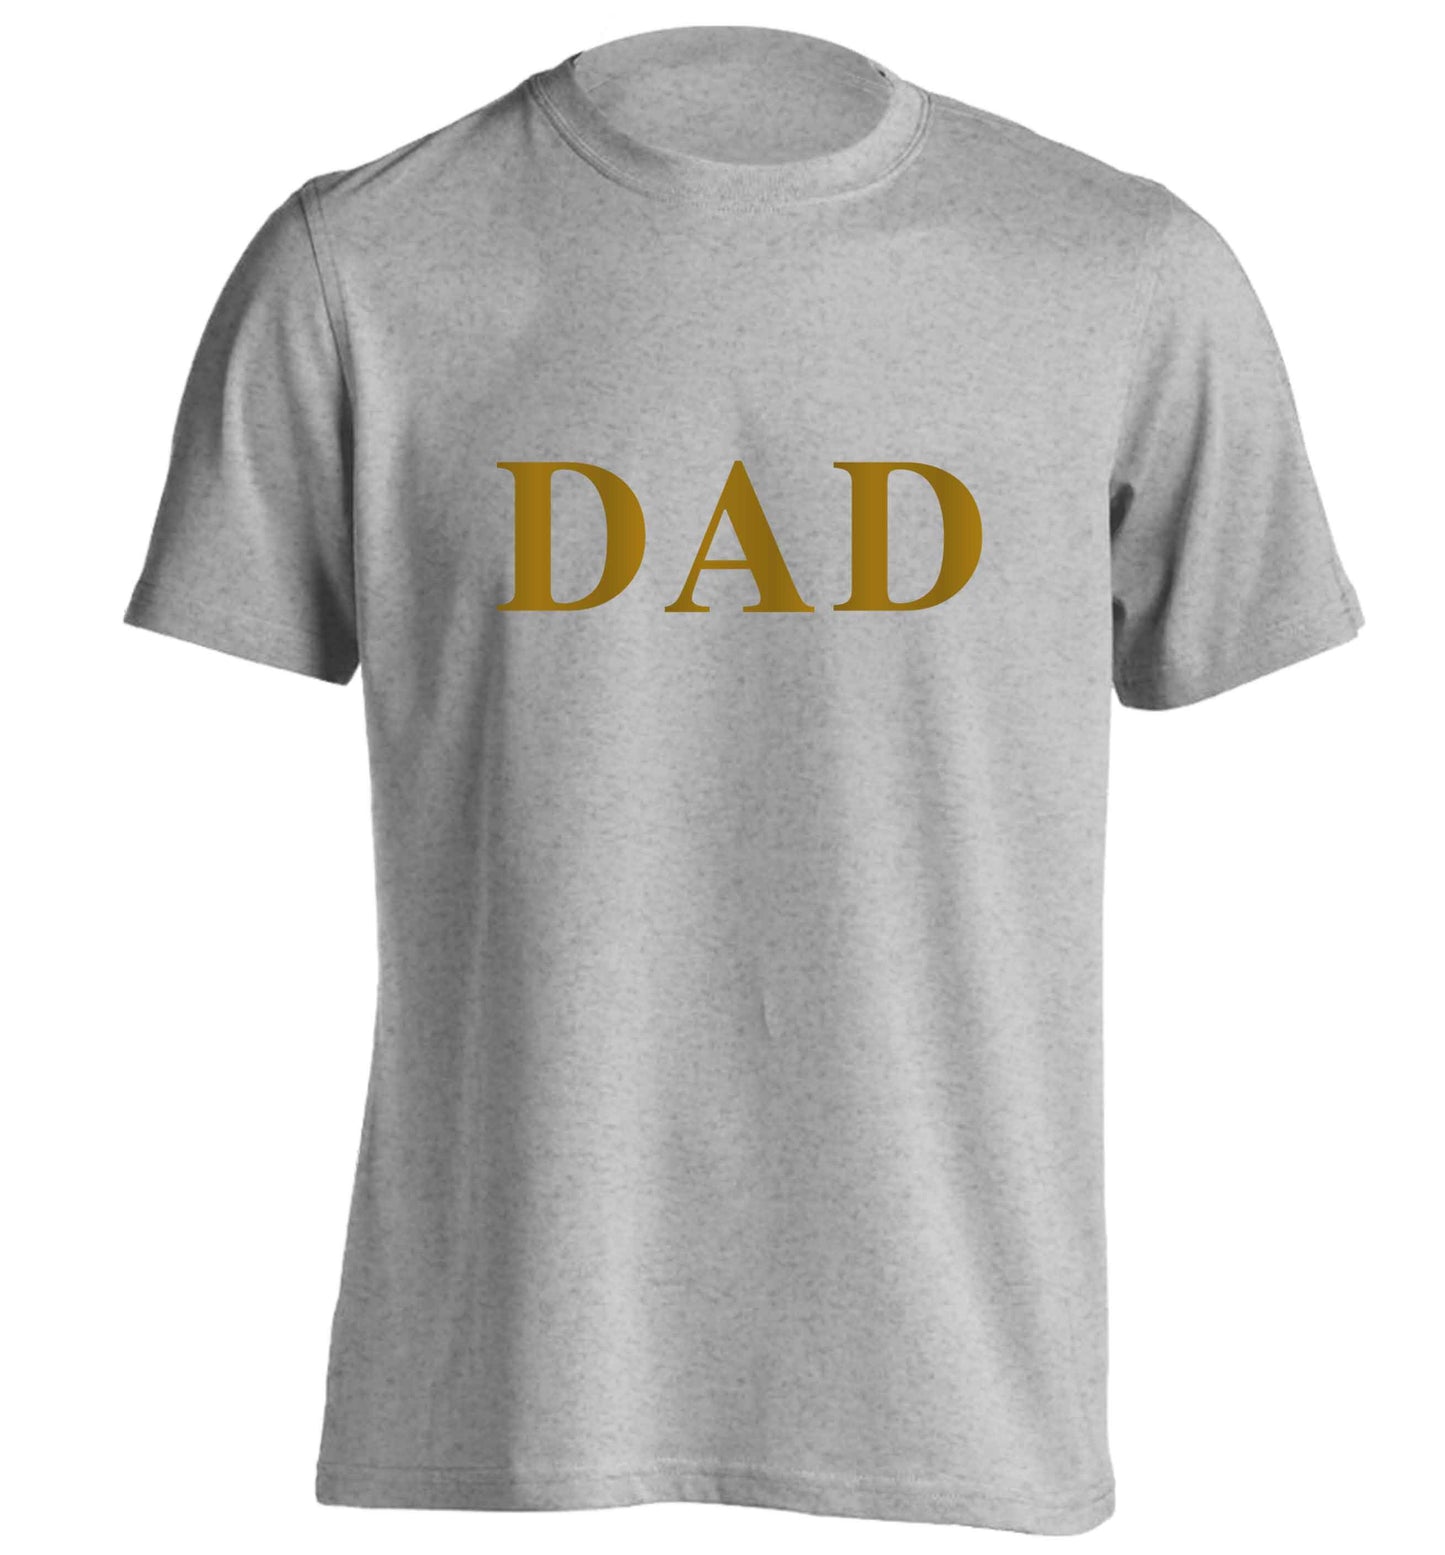 Dad adults unisex grey Tshirt 2XL